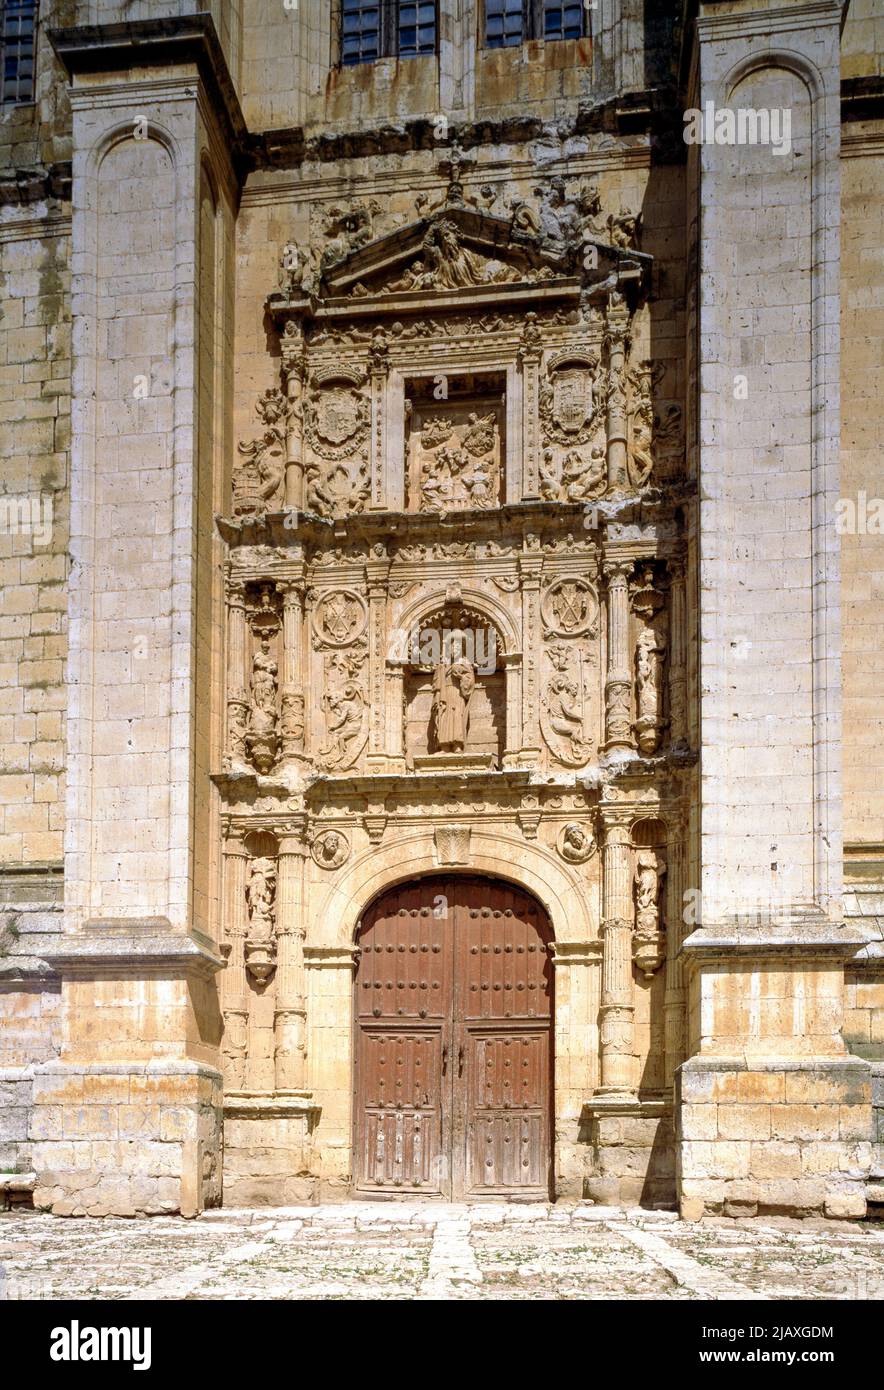 Medina del Rioseco, Kirche Santiago, Fassade Foto de stock